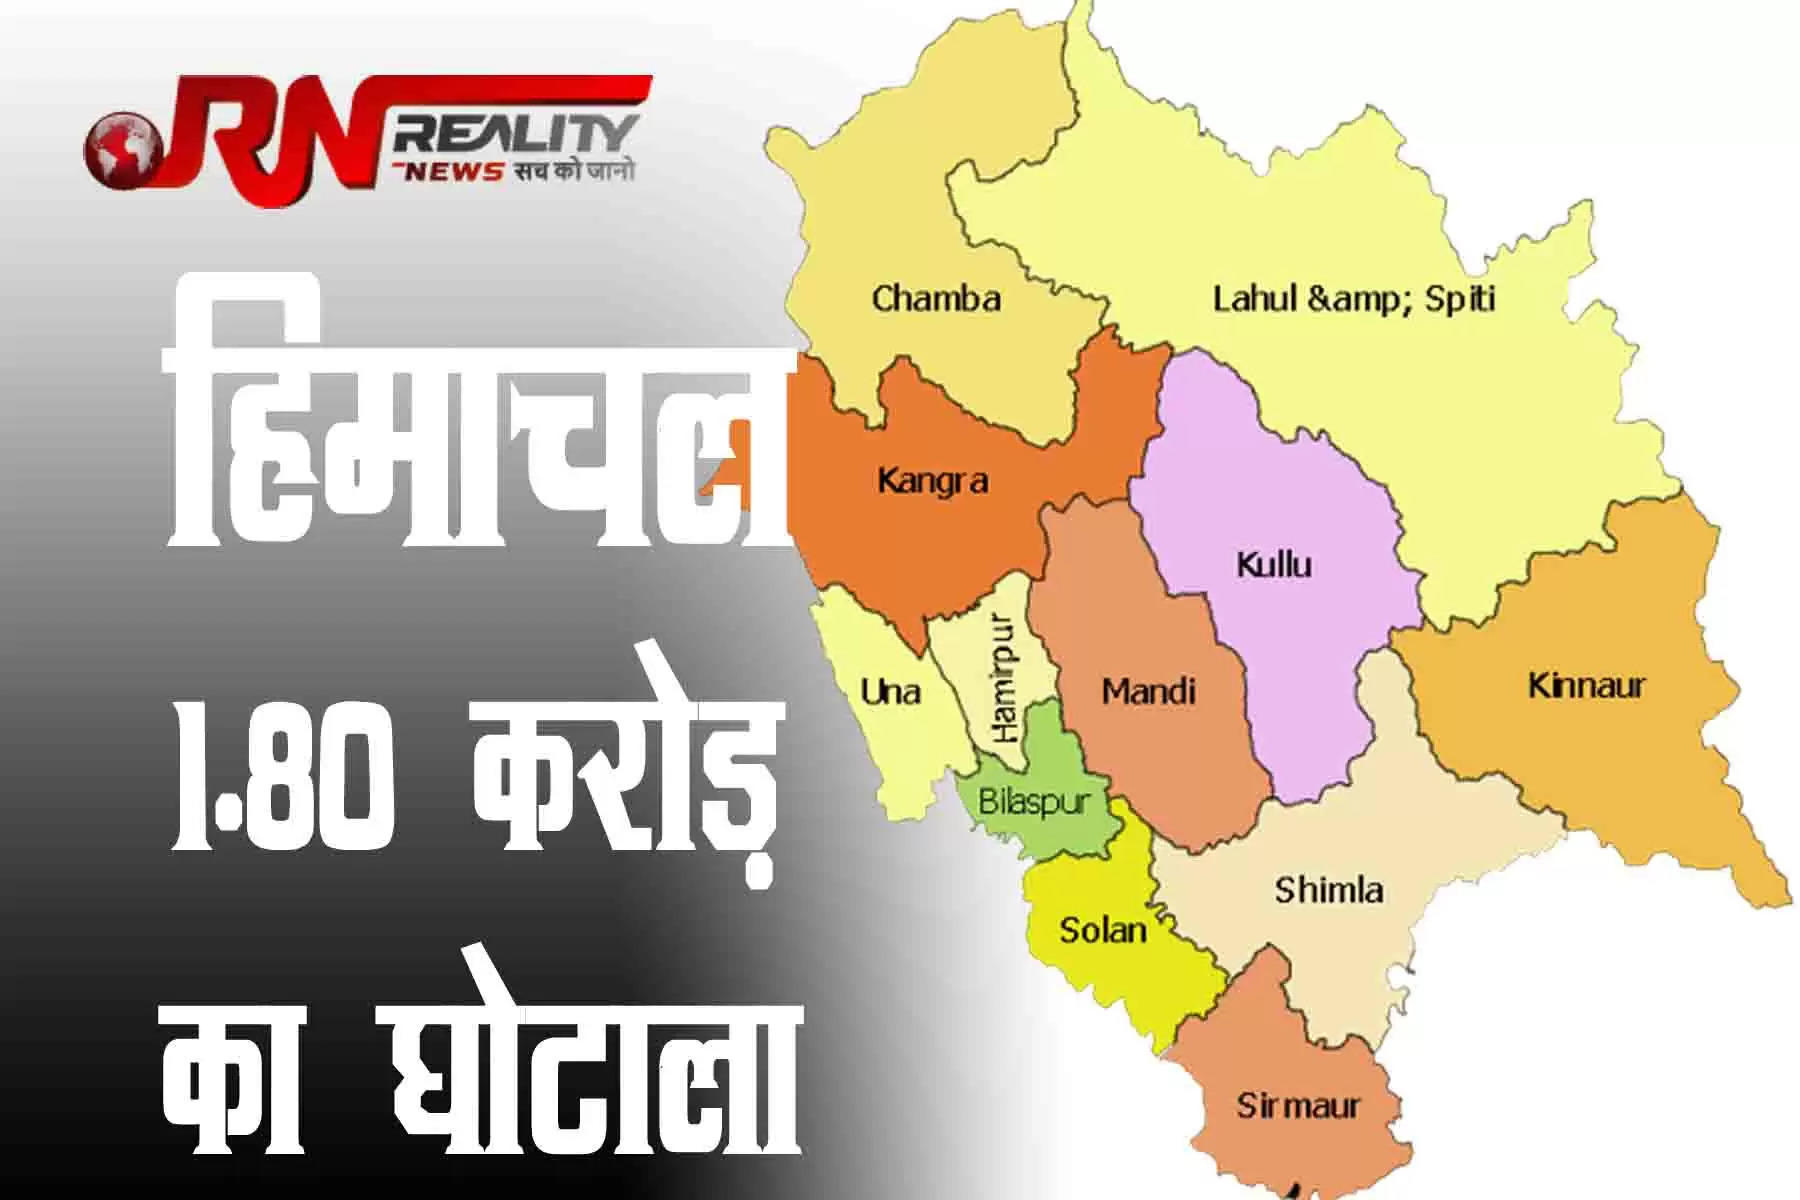 देवभूमि हिमाचल प्रदेश में इसी साल के अंत में विधानसभा चुनाव होने हैं। और चुनावों से ठीक पहले हिमाचल प्रदेश में भ्रष्टाचार के दो बड़े मामले सामने आए हैं। हिमाचल प्रदेश में 55 लाख रुपये का सीमेंट बिक्री का घोटाला हुआ है, जबकि हिमफेड के पेट्रोल पंप में भी करीब 1.30 करोड़ रुपये के घोटाले का मामला सामने आया है। छह अप्रैल का भाजपा के स्थापना दिवस पर भाजपा प्रदेशाध्यक्ष सुरेश कश्यप ने दावा किया था कि हिमाचल भ्रष्टाचार से मुक्त है।